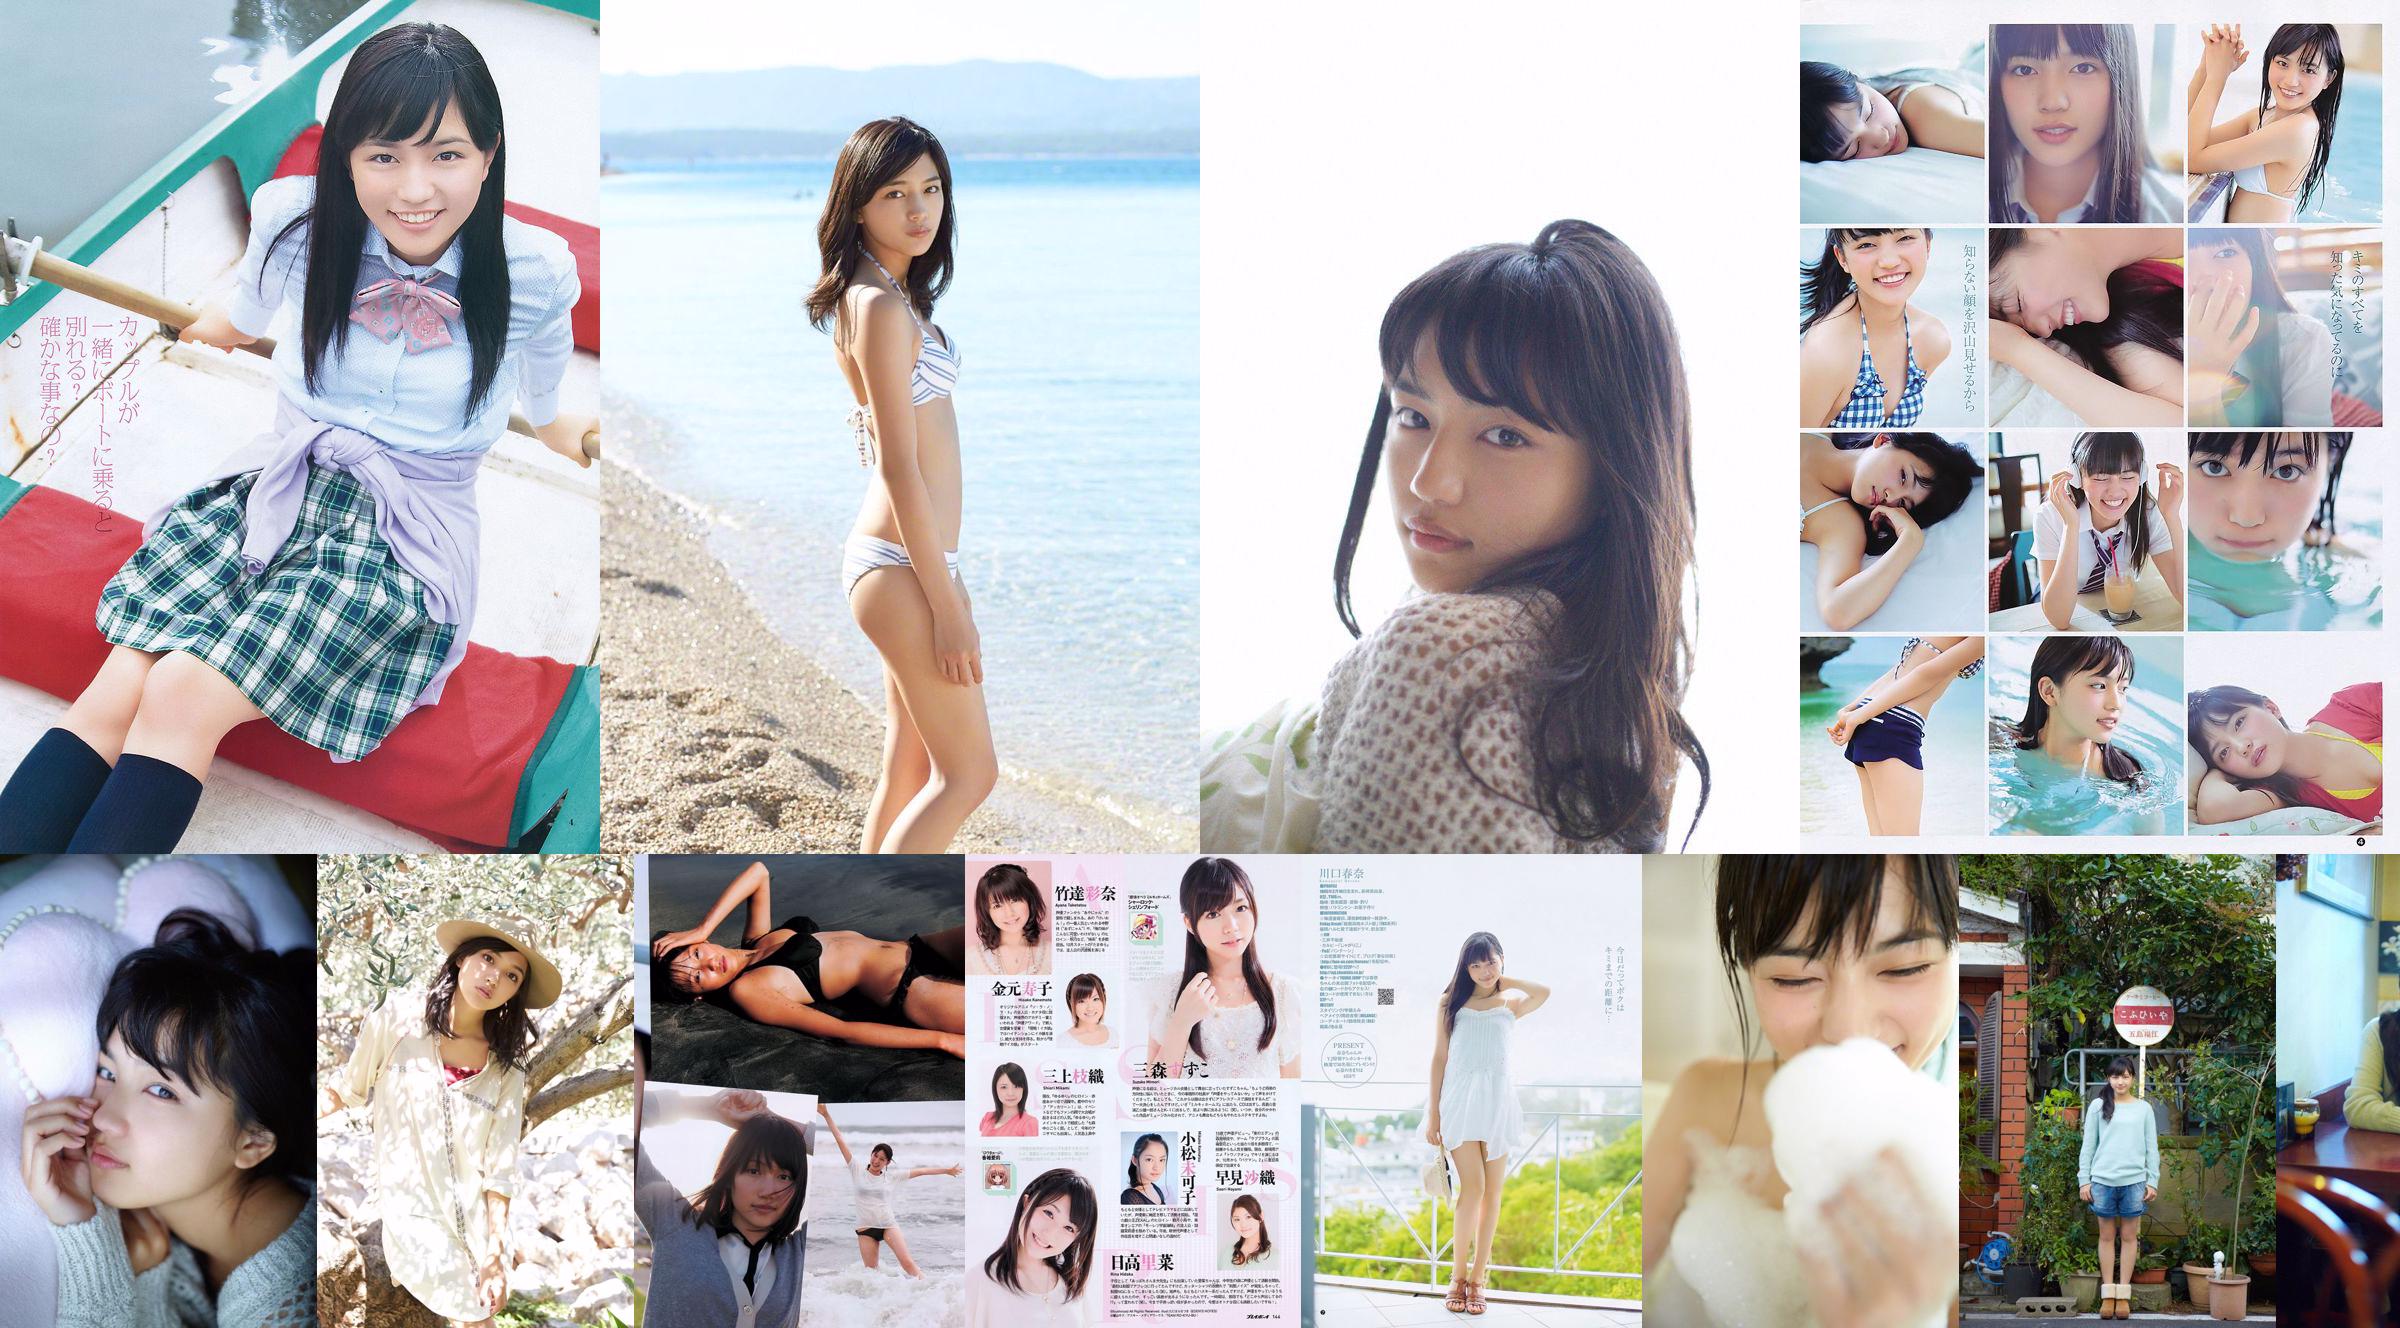 Haruna Kawaguchi Yumi Sugimoto [Salto settimanale per giovani] 2012 No.18 Fotografia No.b40075 Pagina 1